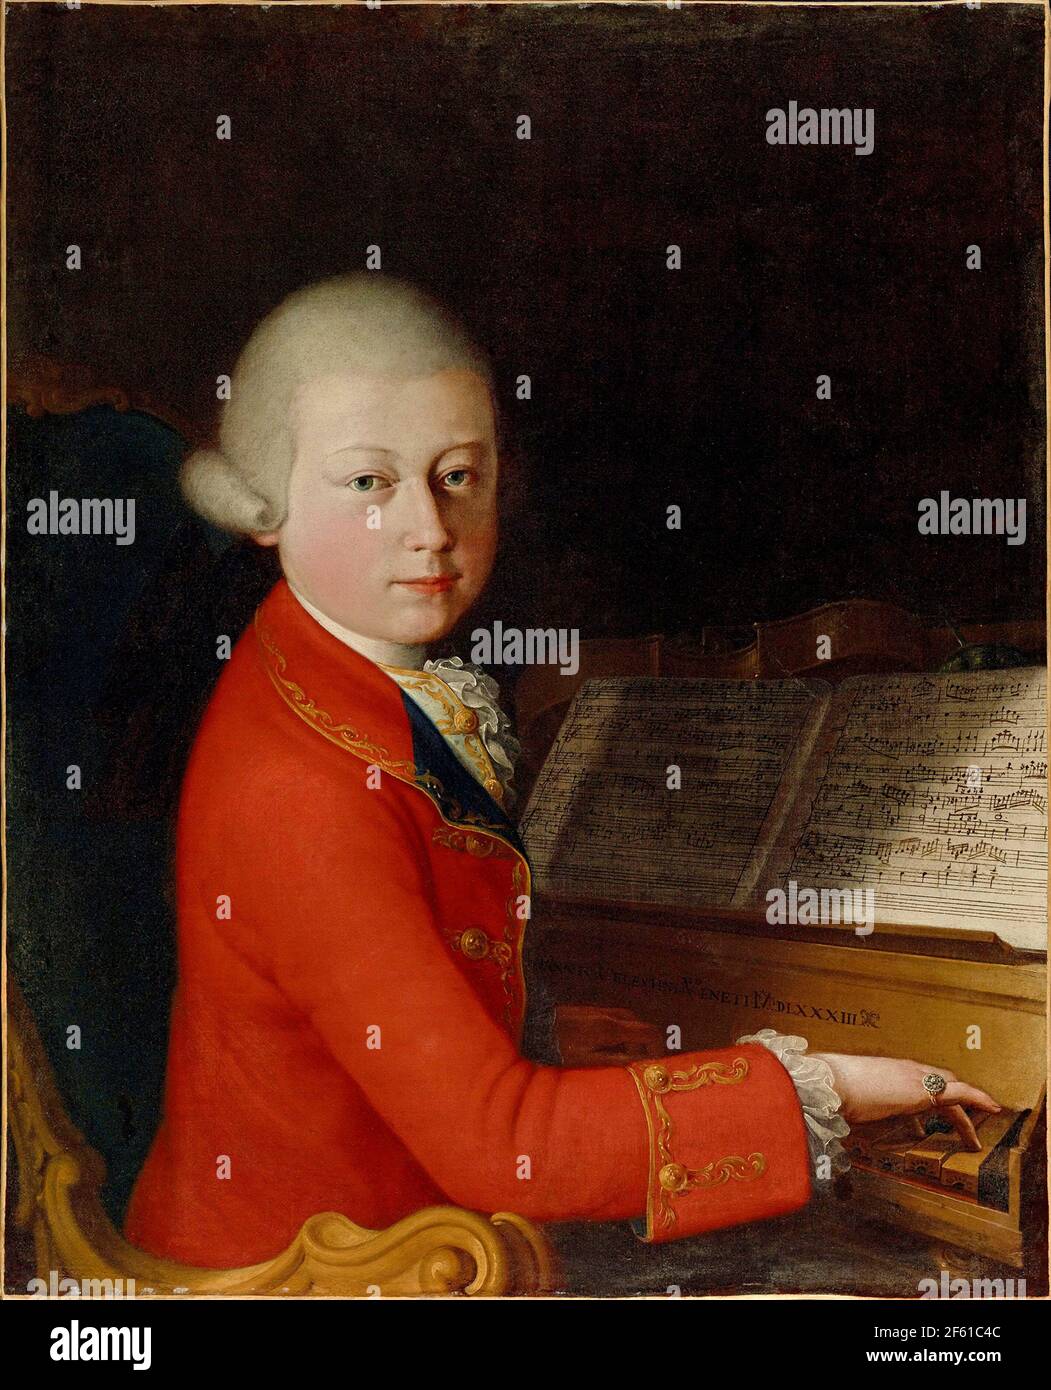 Wolfgang Amadeus Mozart, Aged 13 Stock Photo